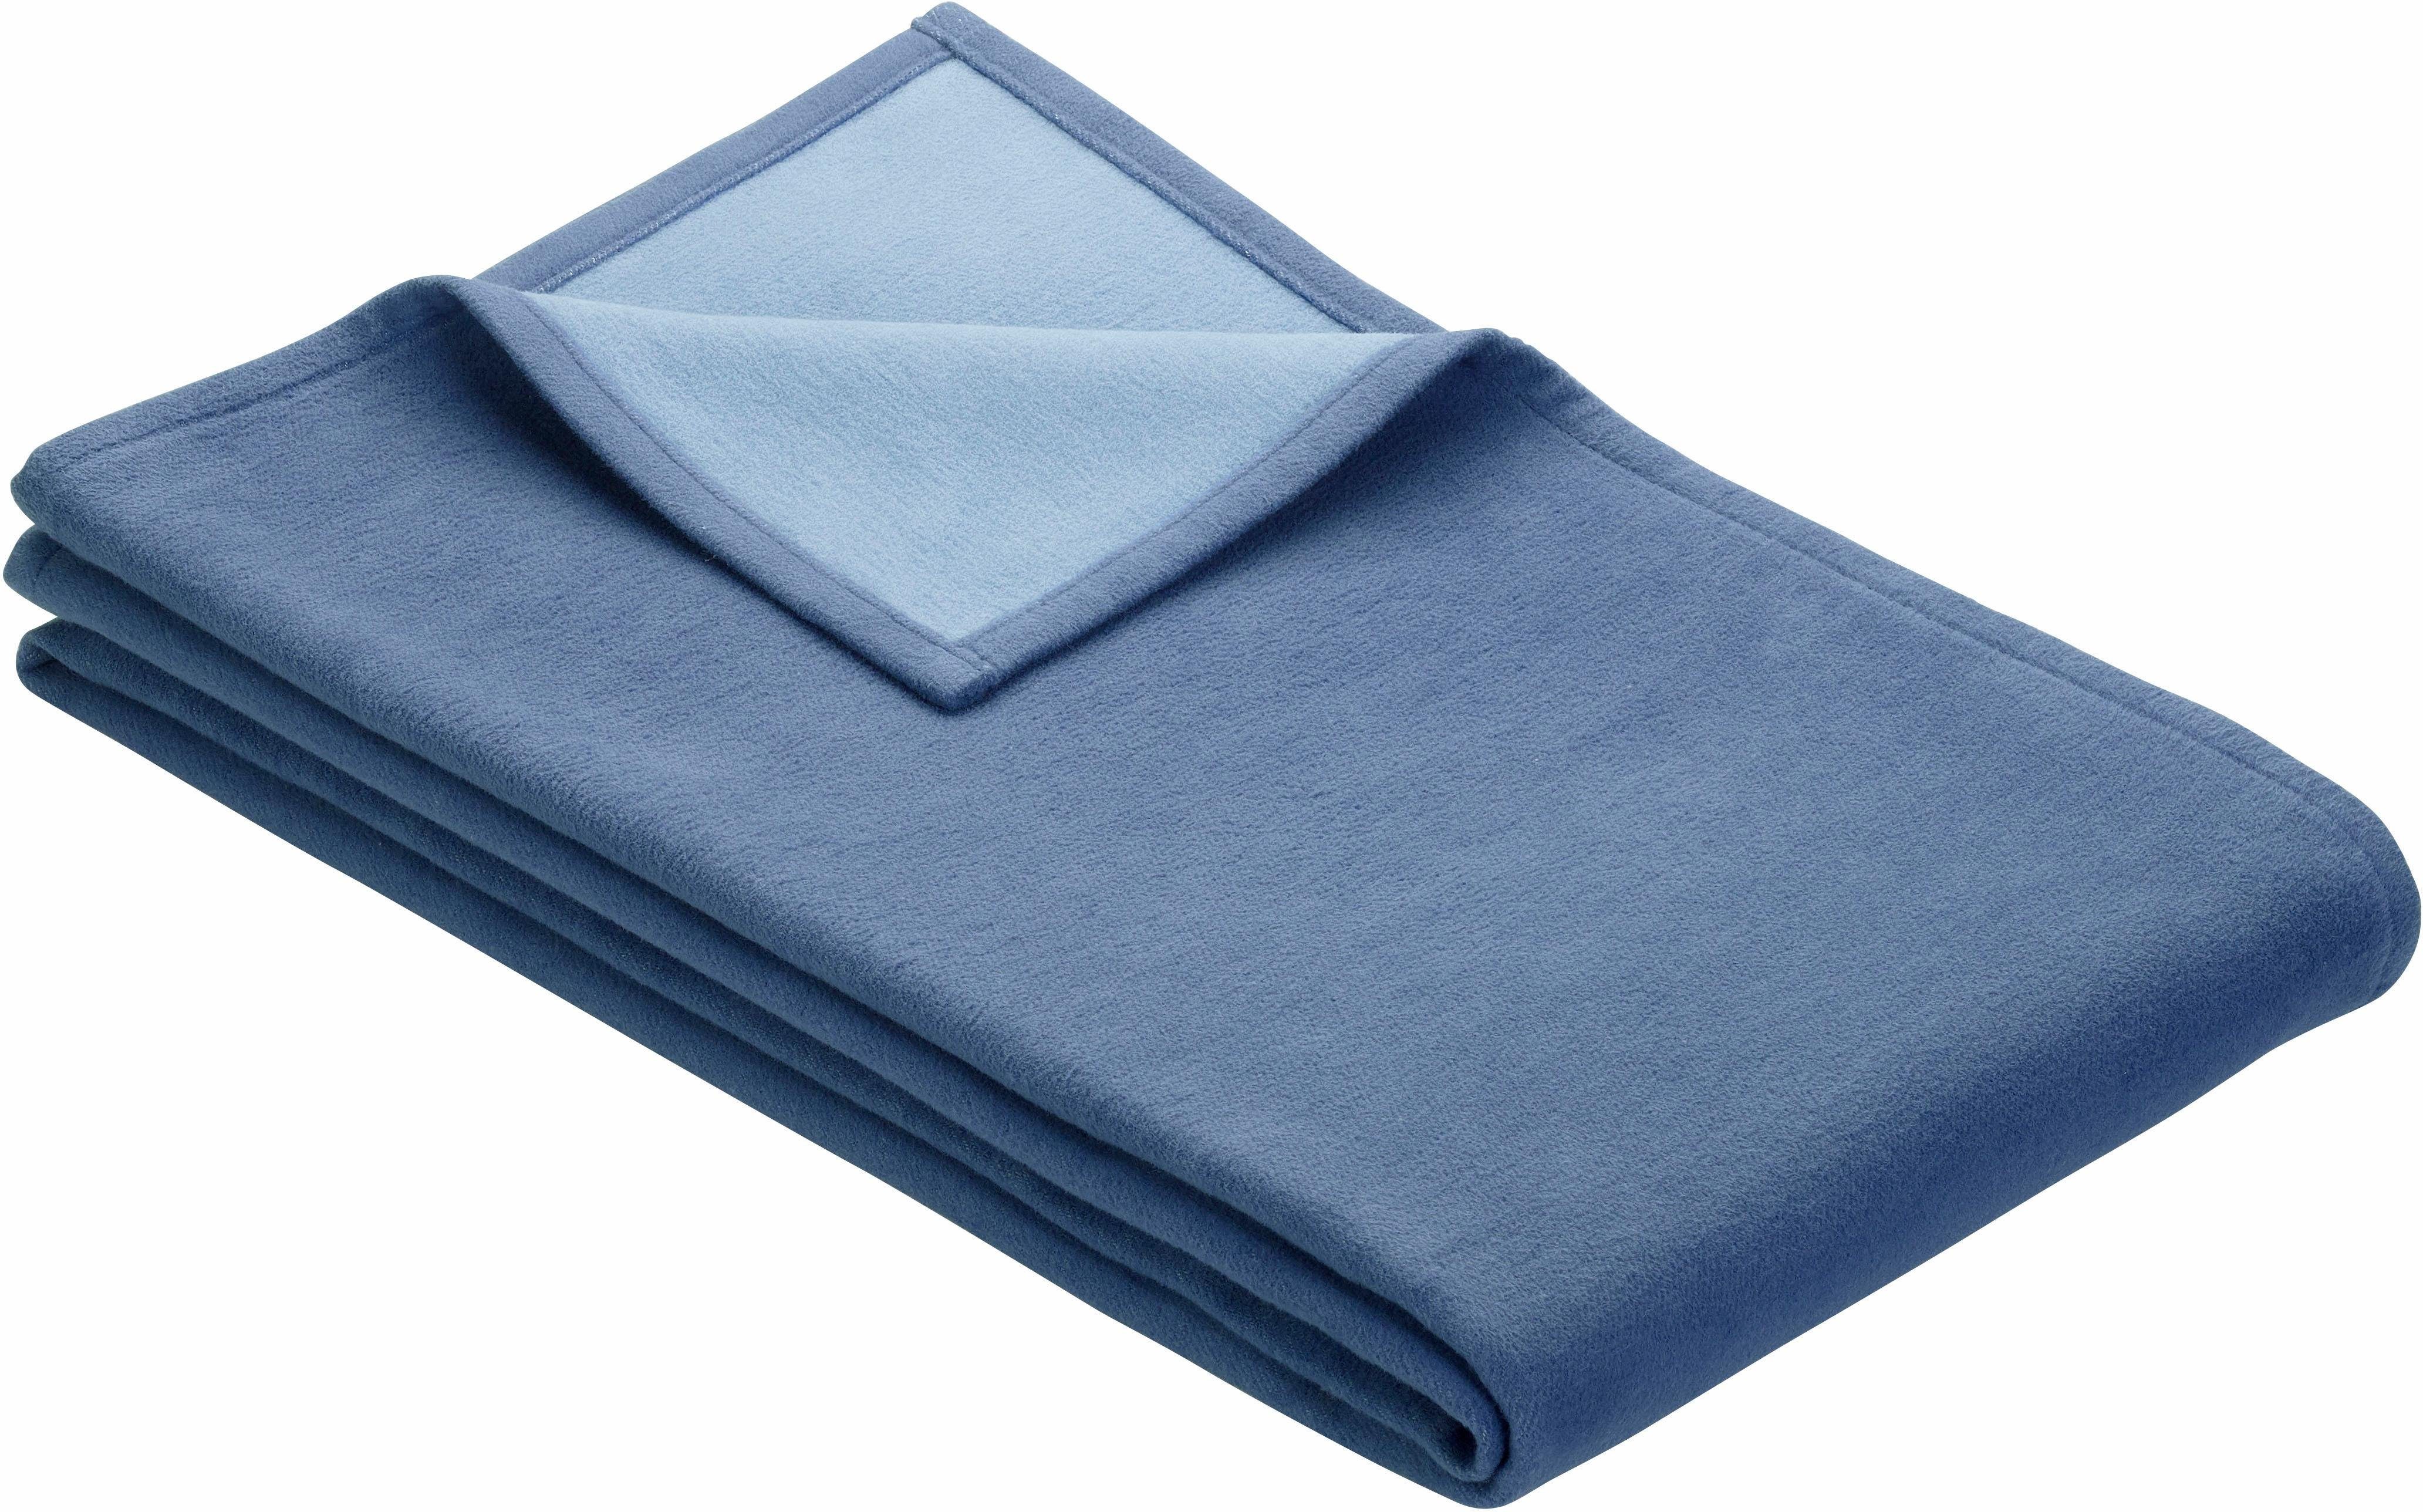 Wohndecke Cotton Pur, IBENA, trendigen blau Farben in